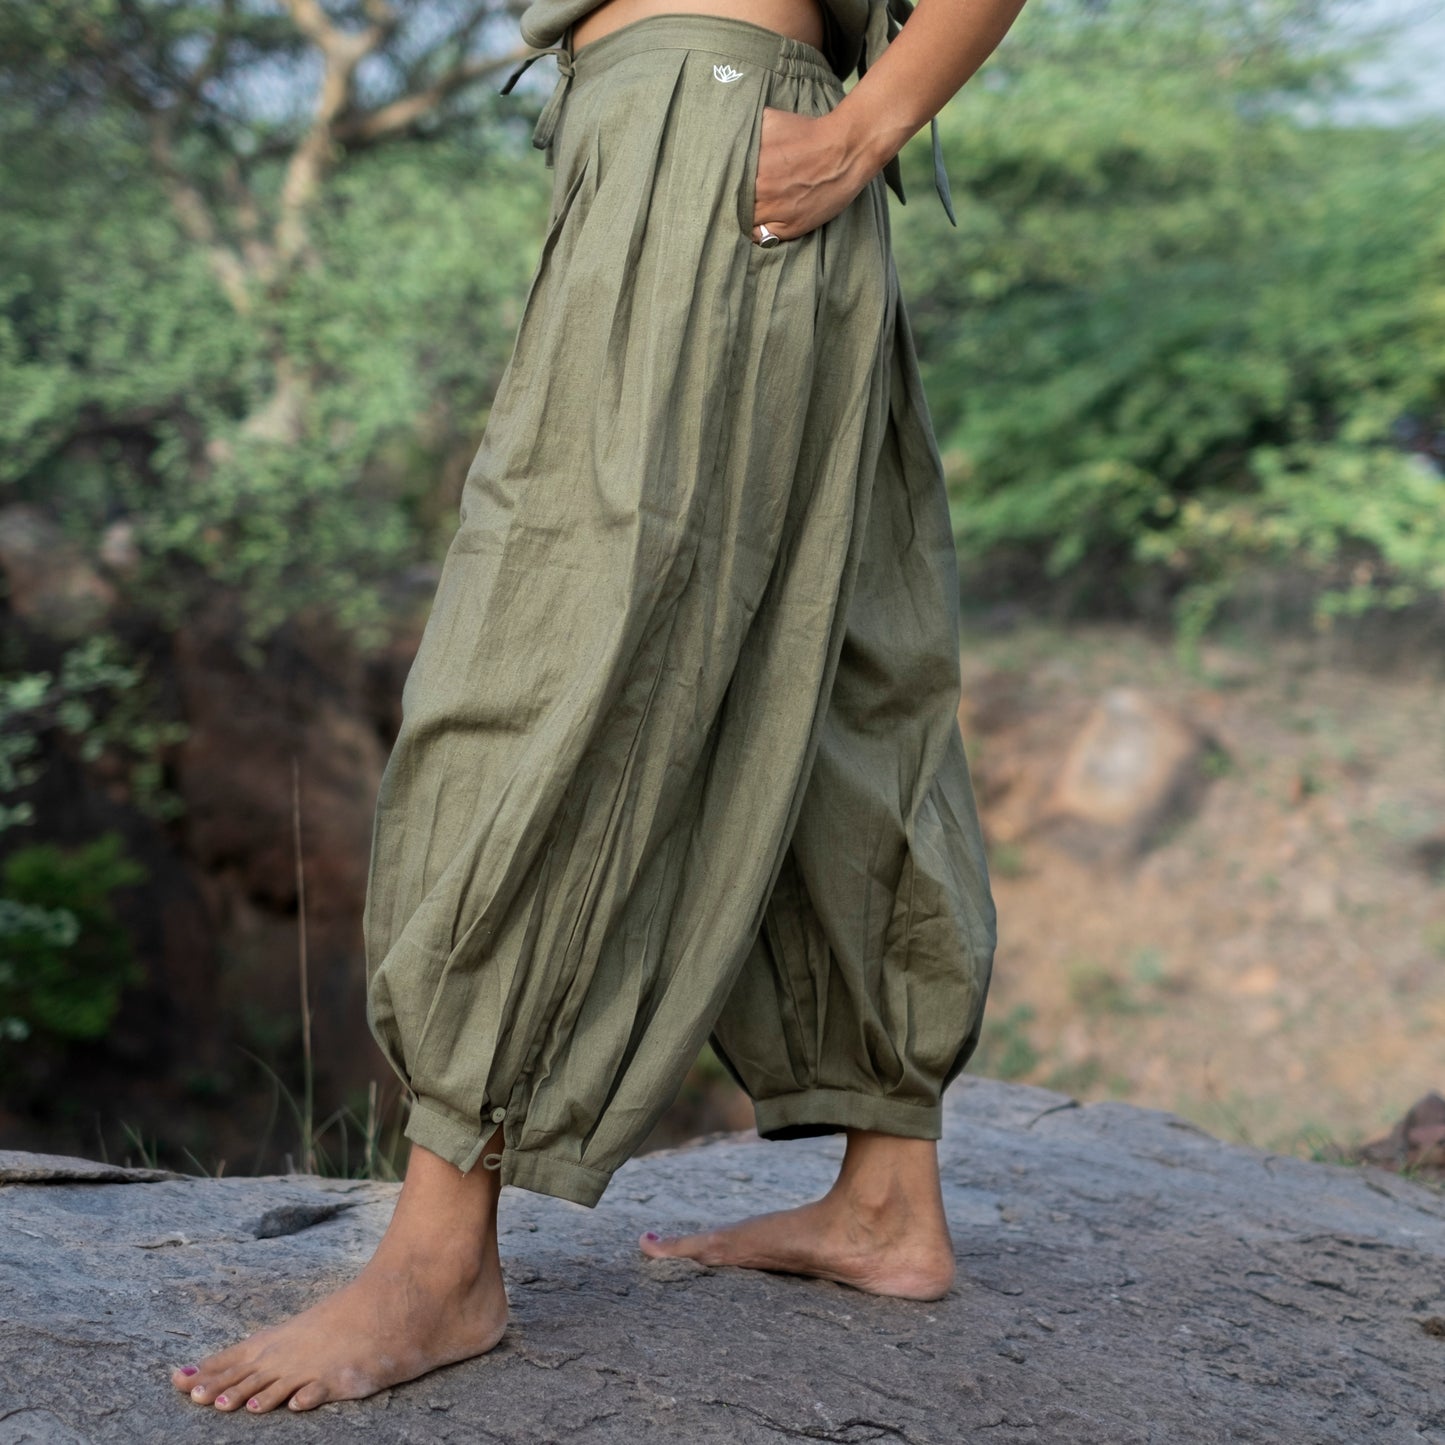 Chakra Yoga Top and Pant Set Green